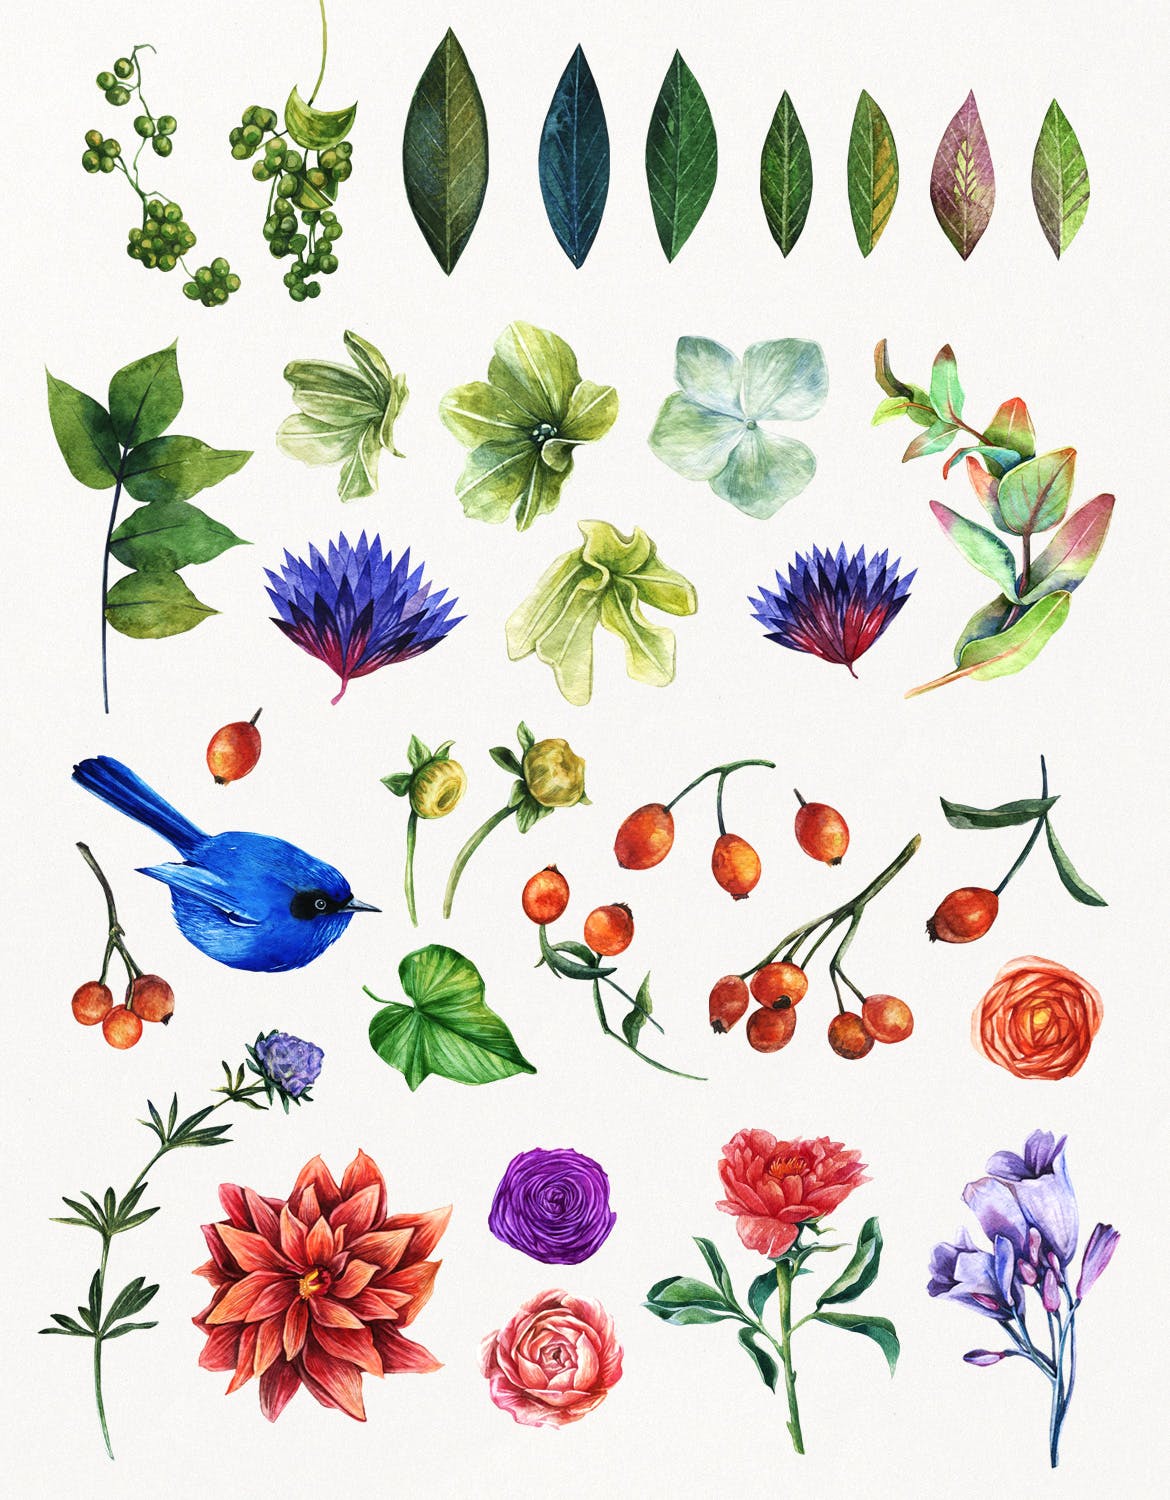 高品质的手绘水彩夏天植物动物元素大集合 enchanted-